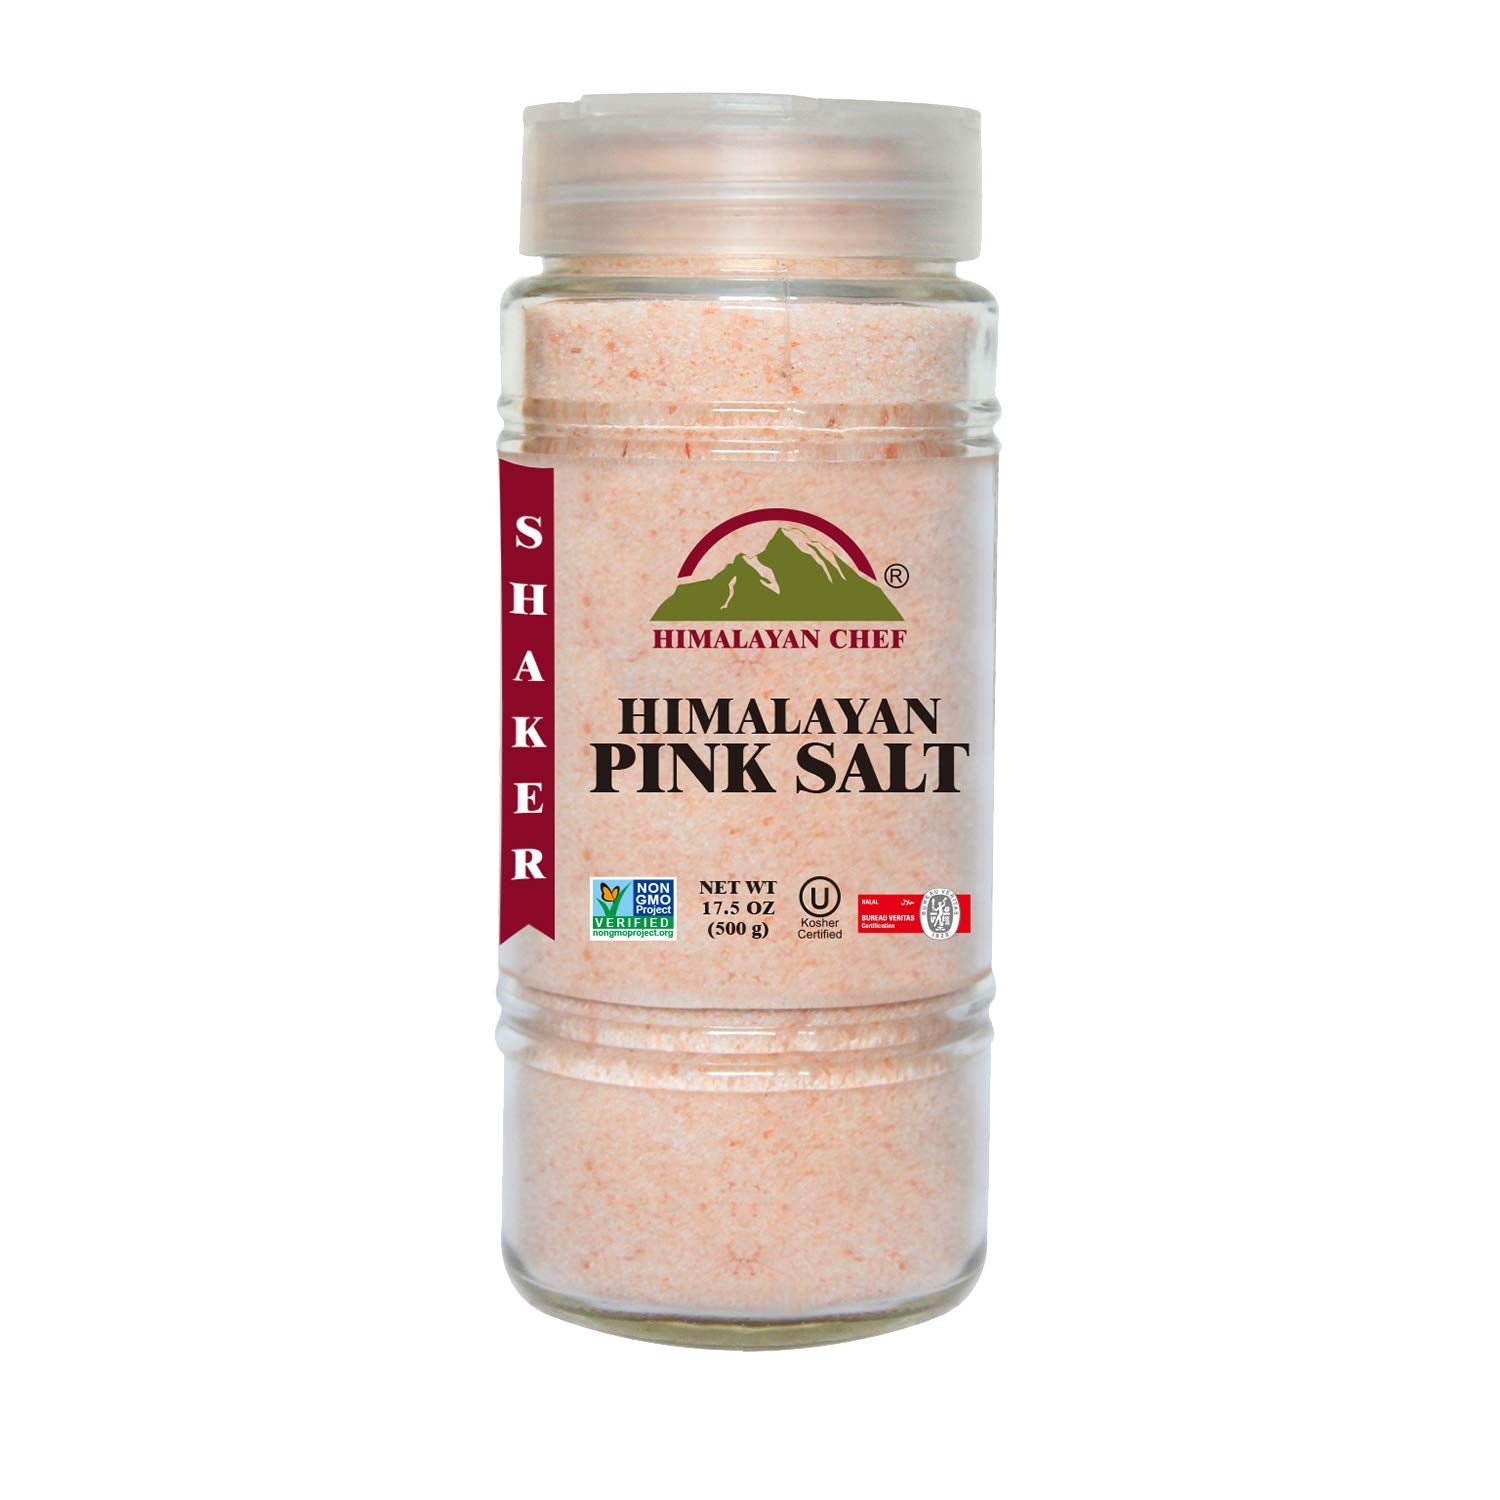 Himalayan Chef Himalayan Pink Salt 17.5 oz